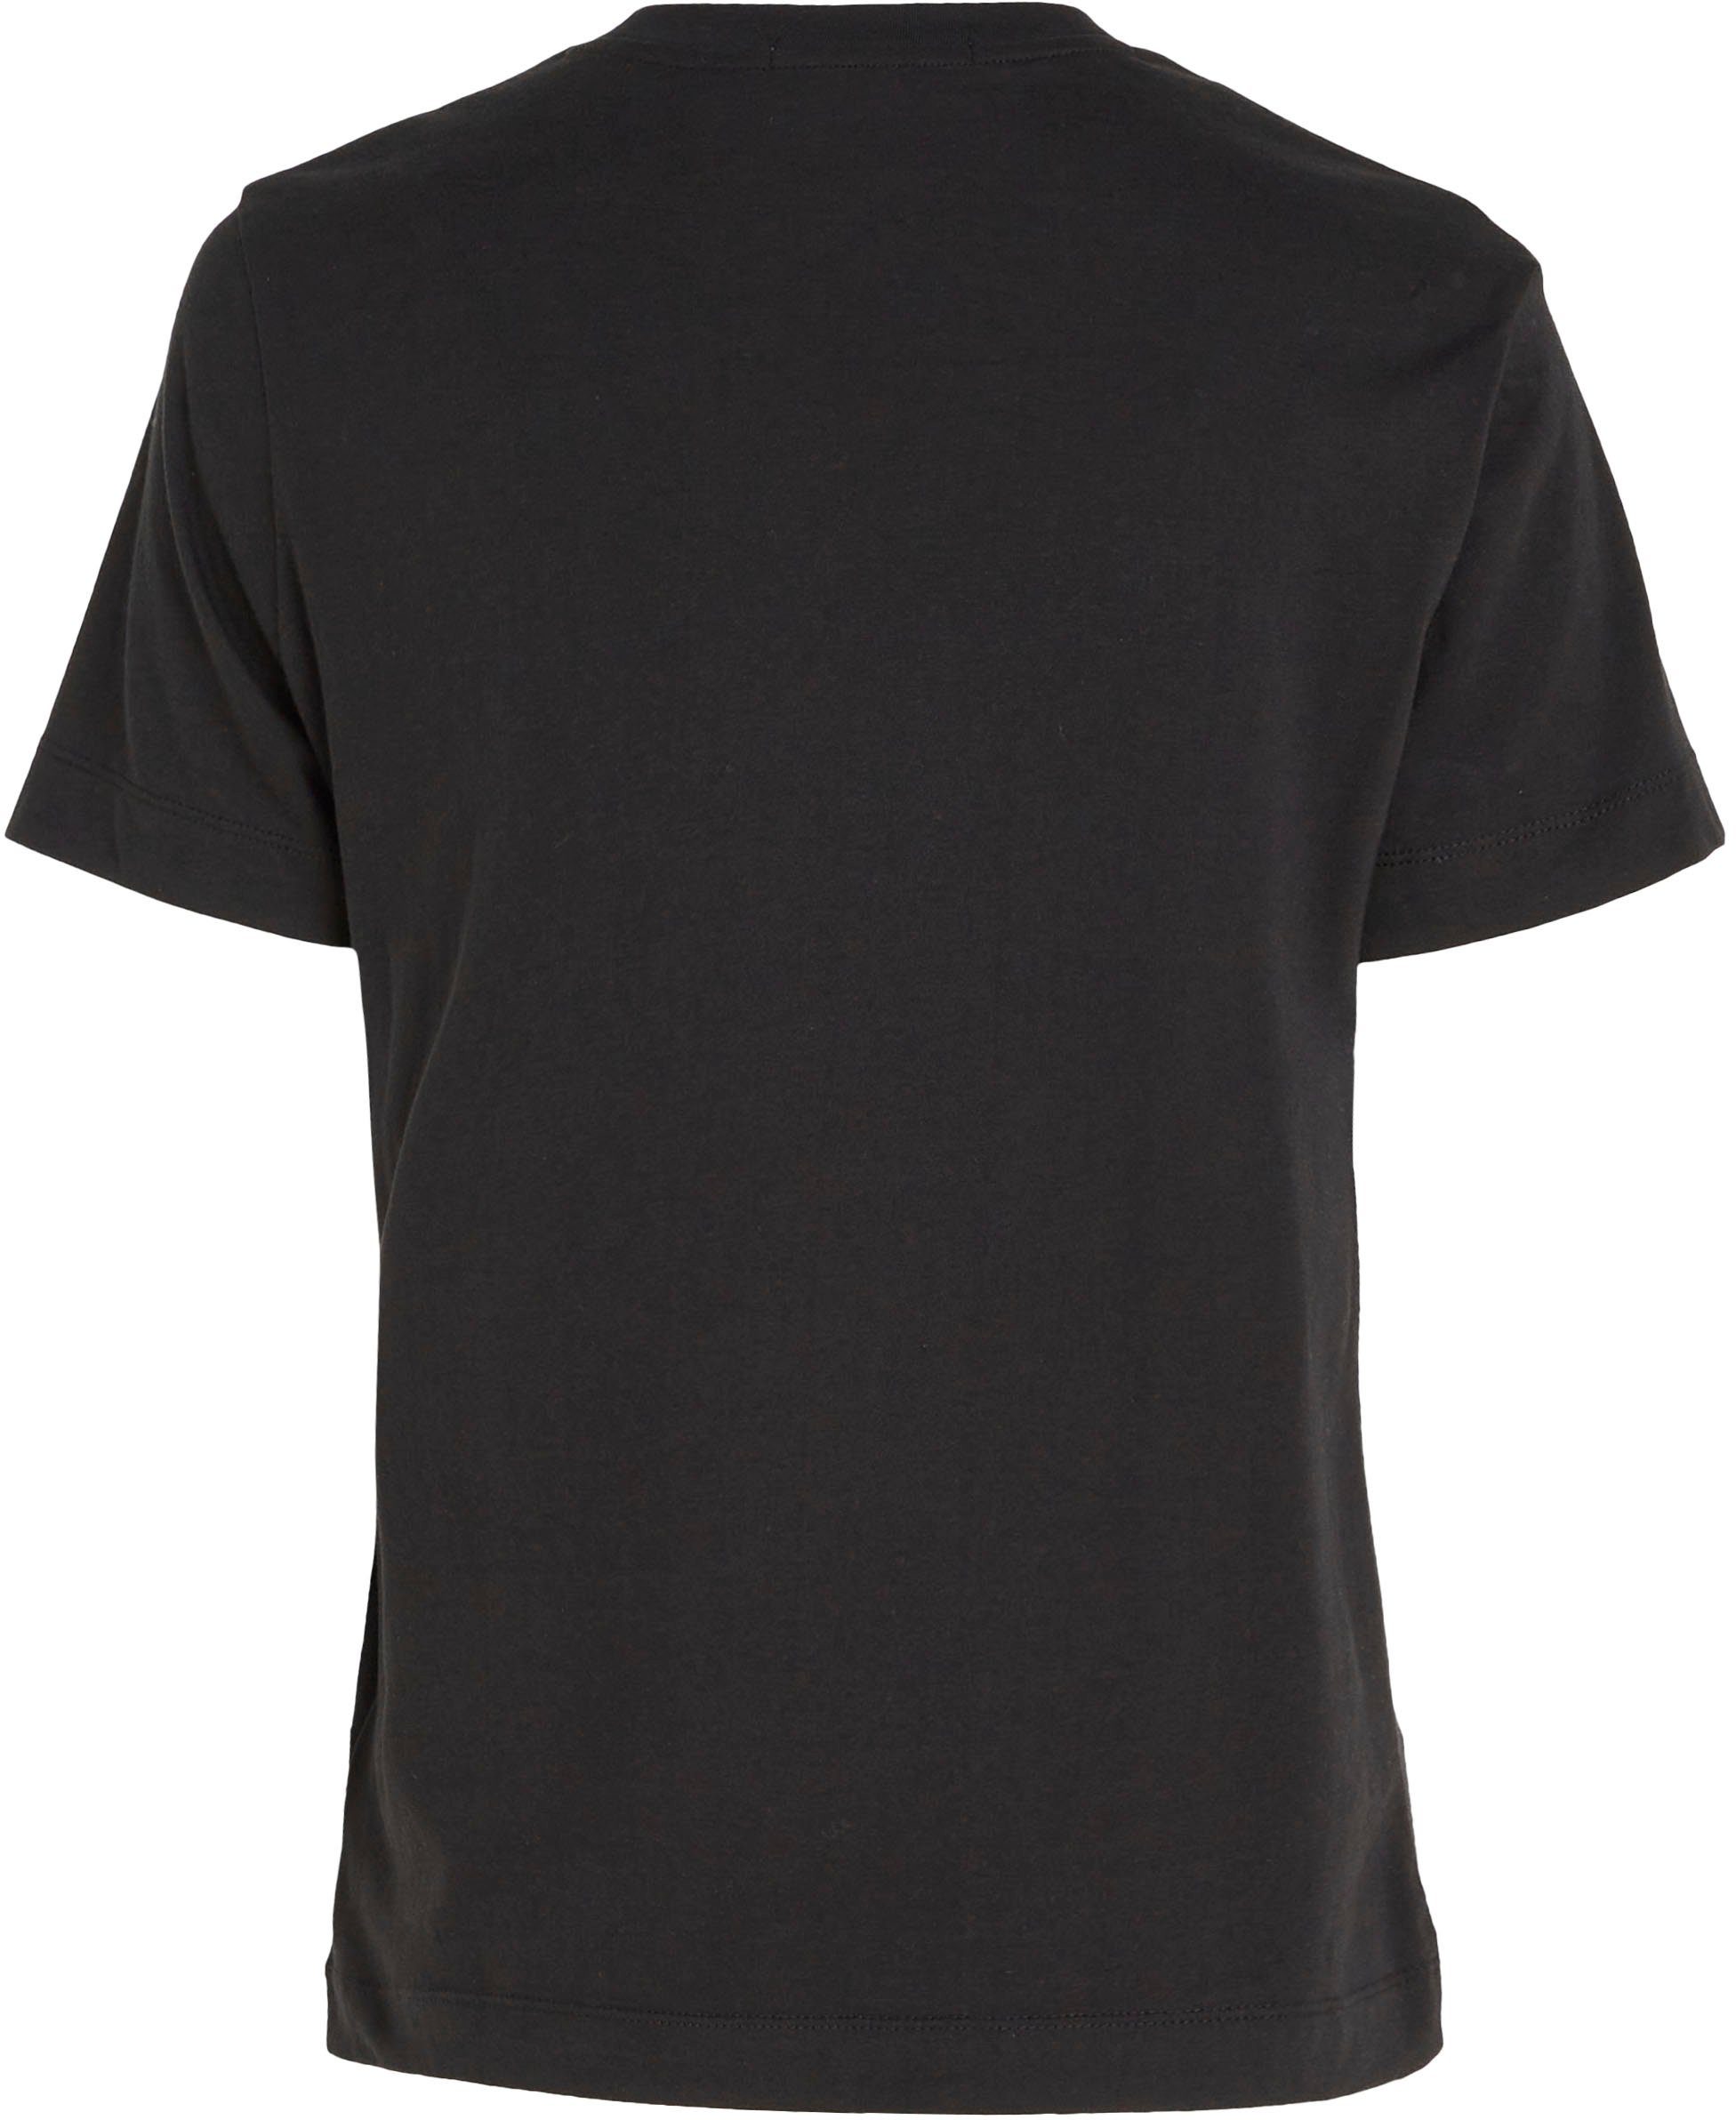 Calvin Klein Jeans T-Shirt STACKED dezentem Logodruck Black STRAIGHT Ck mit LOGO Klein MODERN Jeans TEE Calvin